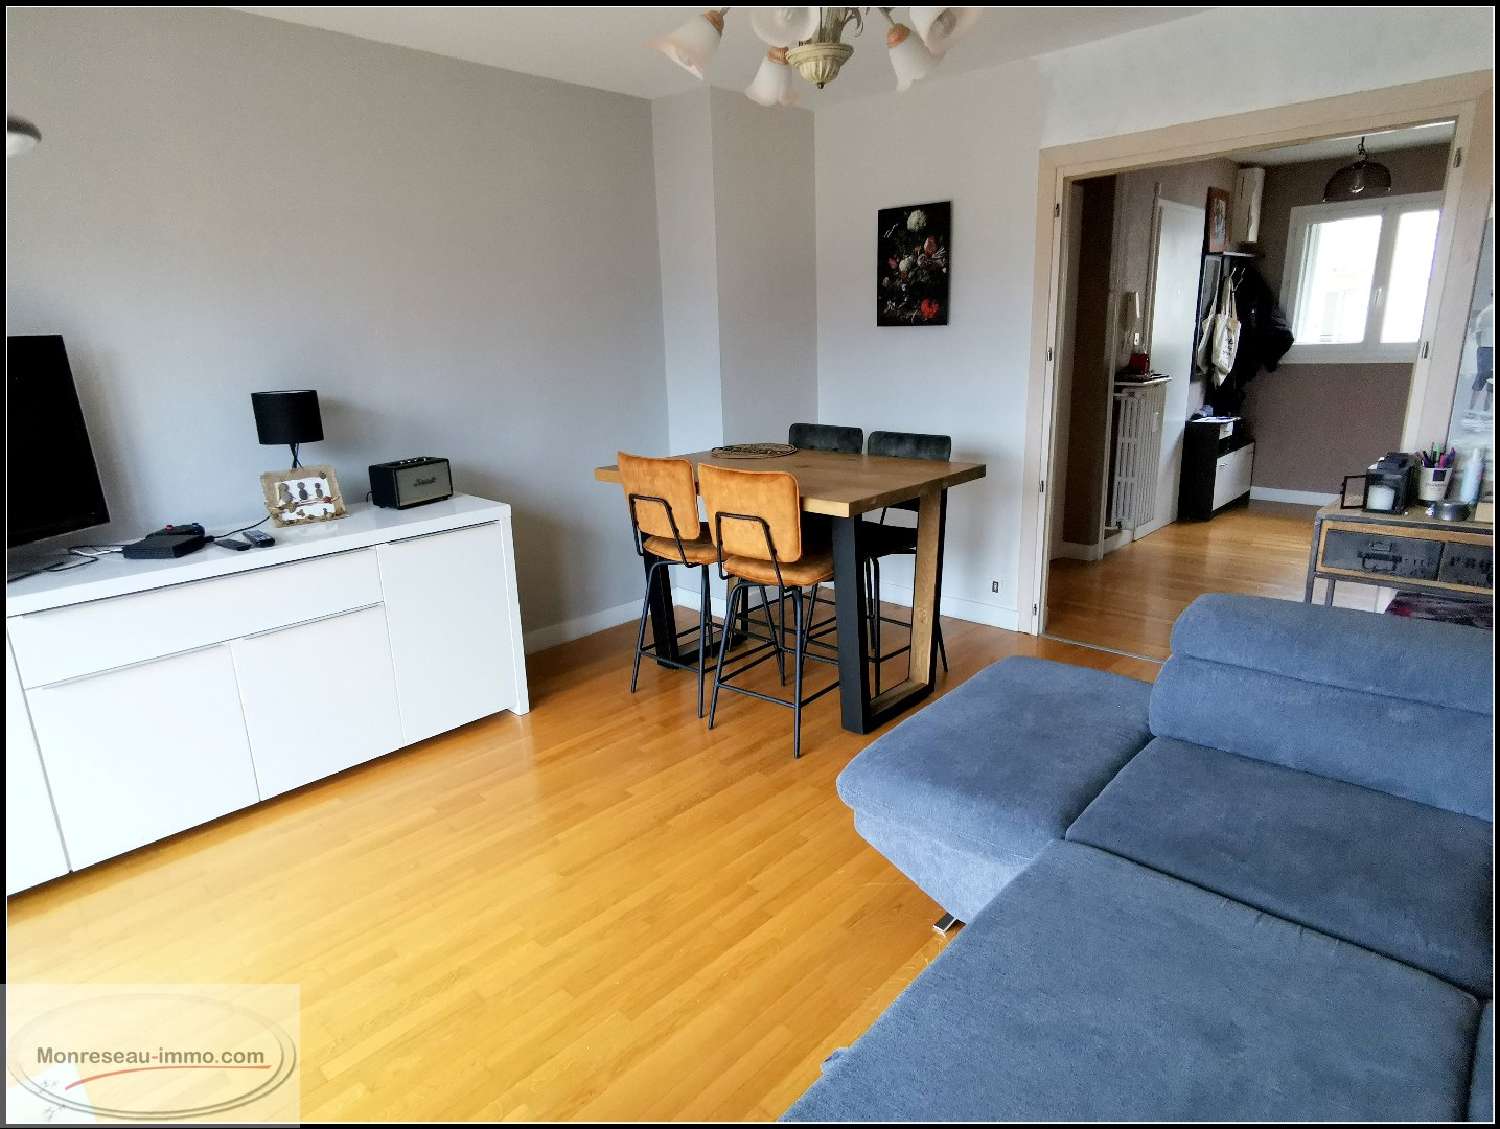  for sale apartment Remiremont Vosges 3